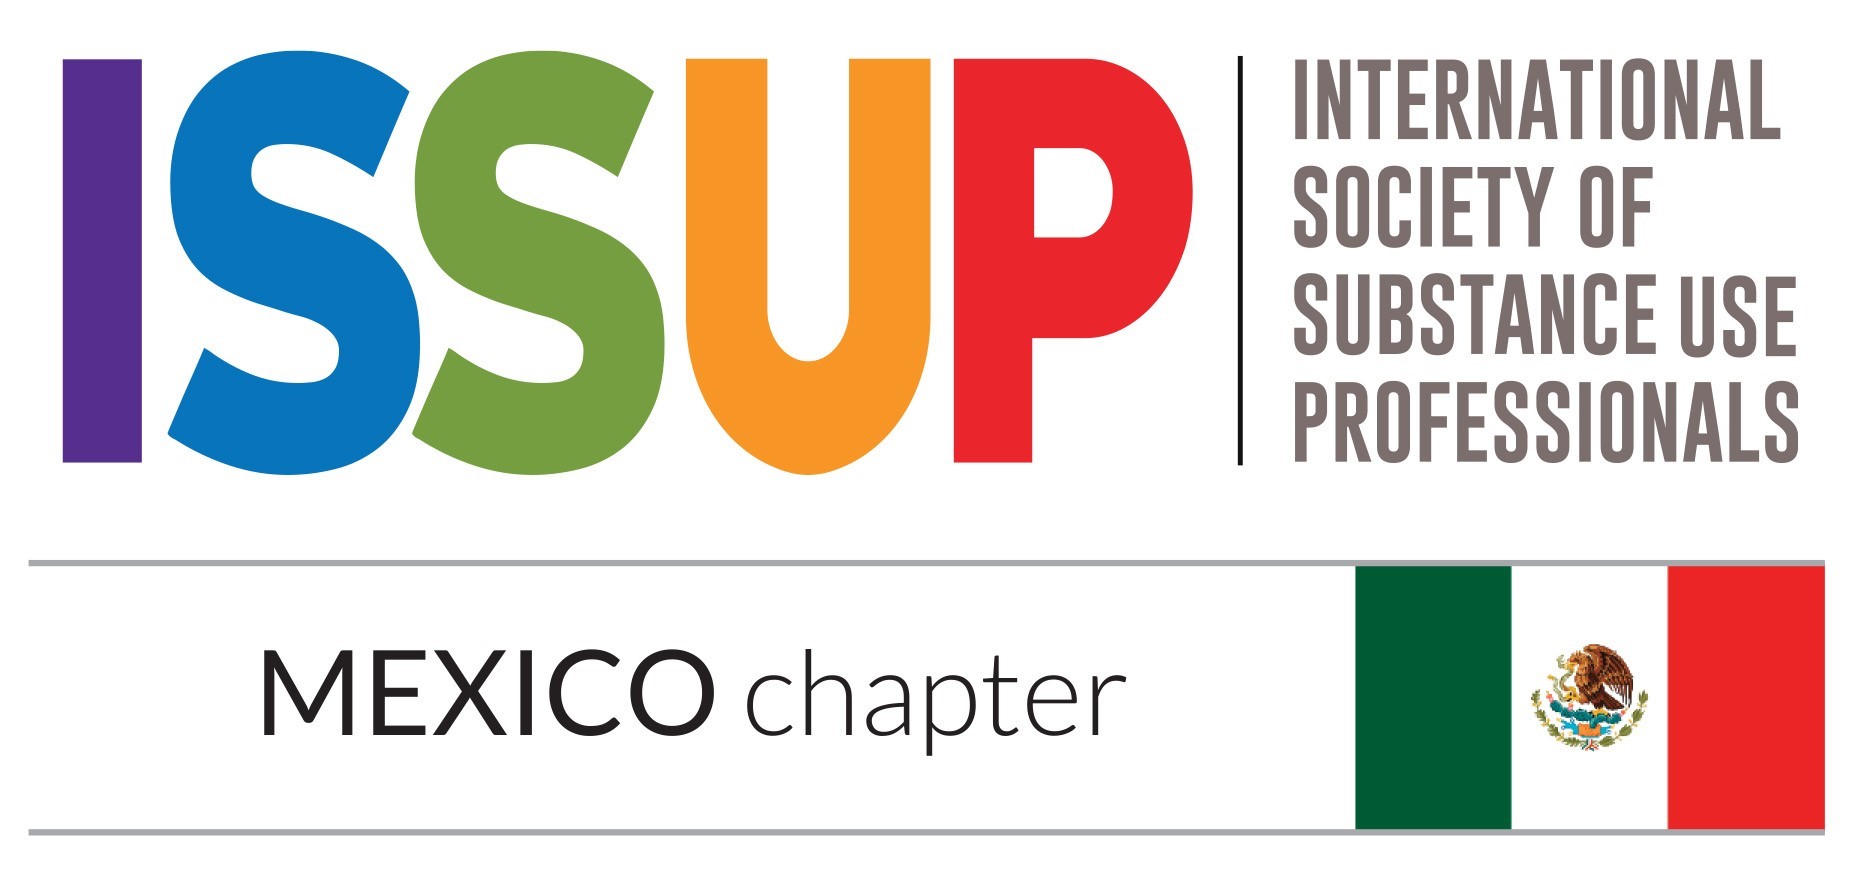 O México é um dos Capítulos Nacionais da ISSUP na América Latina